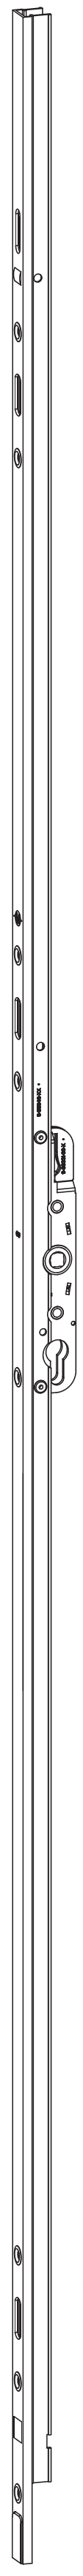 GU-ITALIA -  Cremonese HS 934 - 937 per alzante scorrevole altezza maniglia fissa con chiusura a perni - gr / dim. A PERNI DI CHIUSURA - entrata 27,5 - alt. man. 1000 - lbb/hbb 1210 - 1840